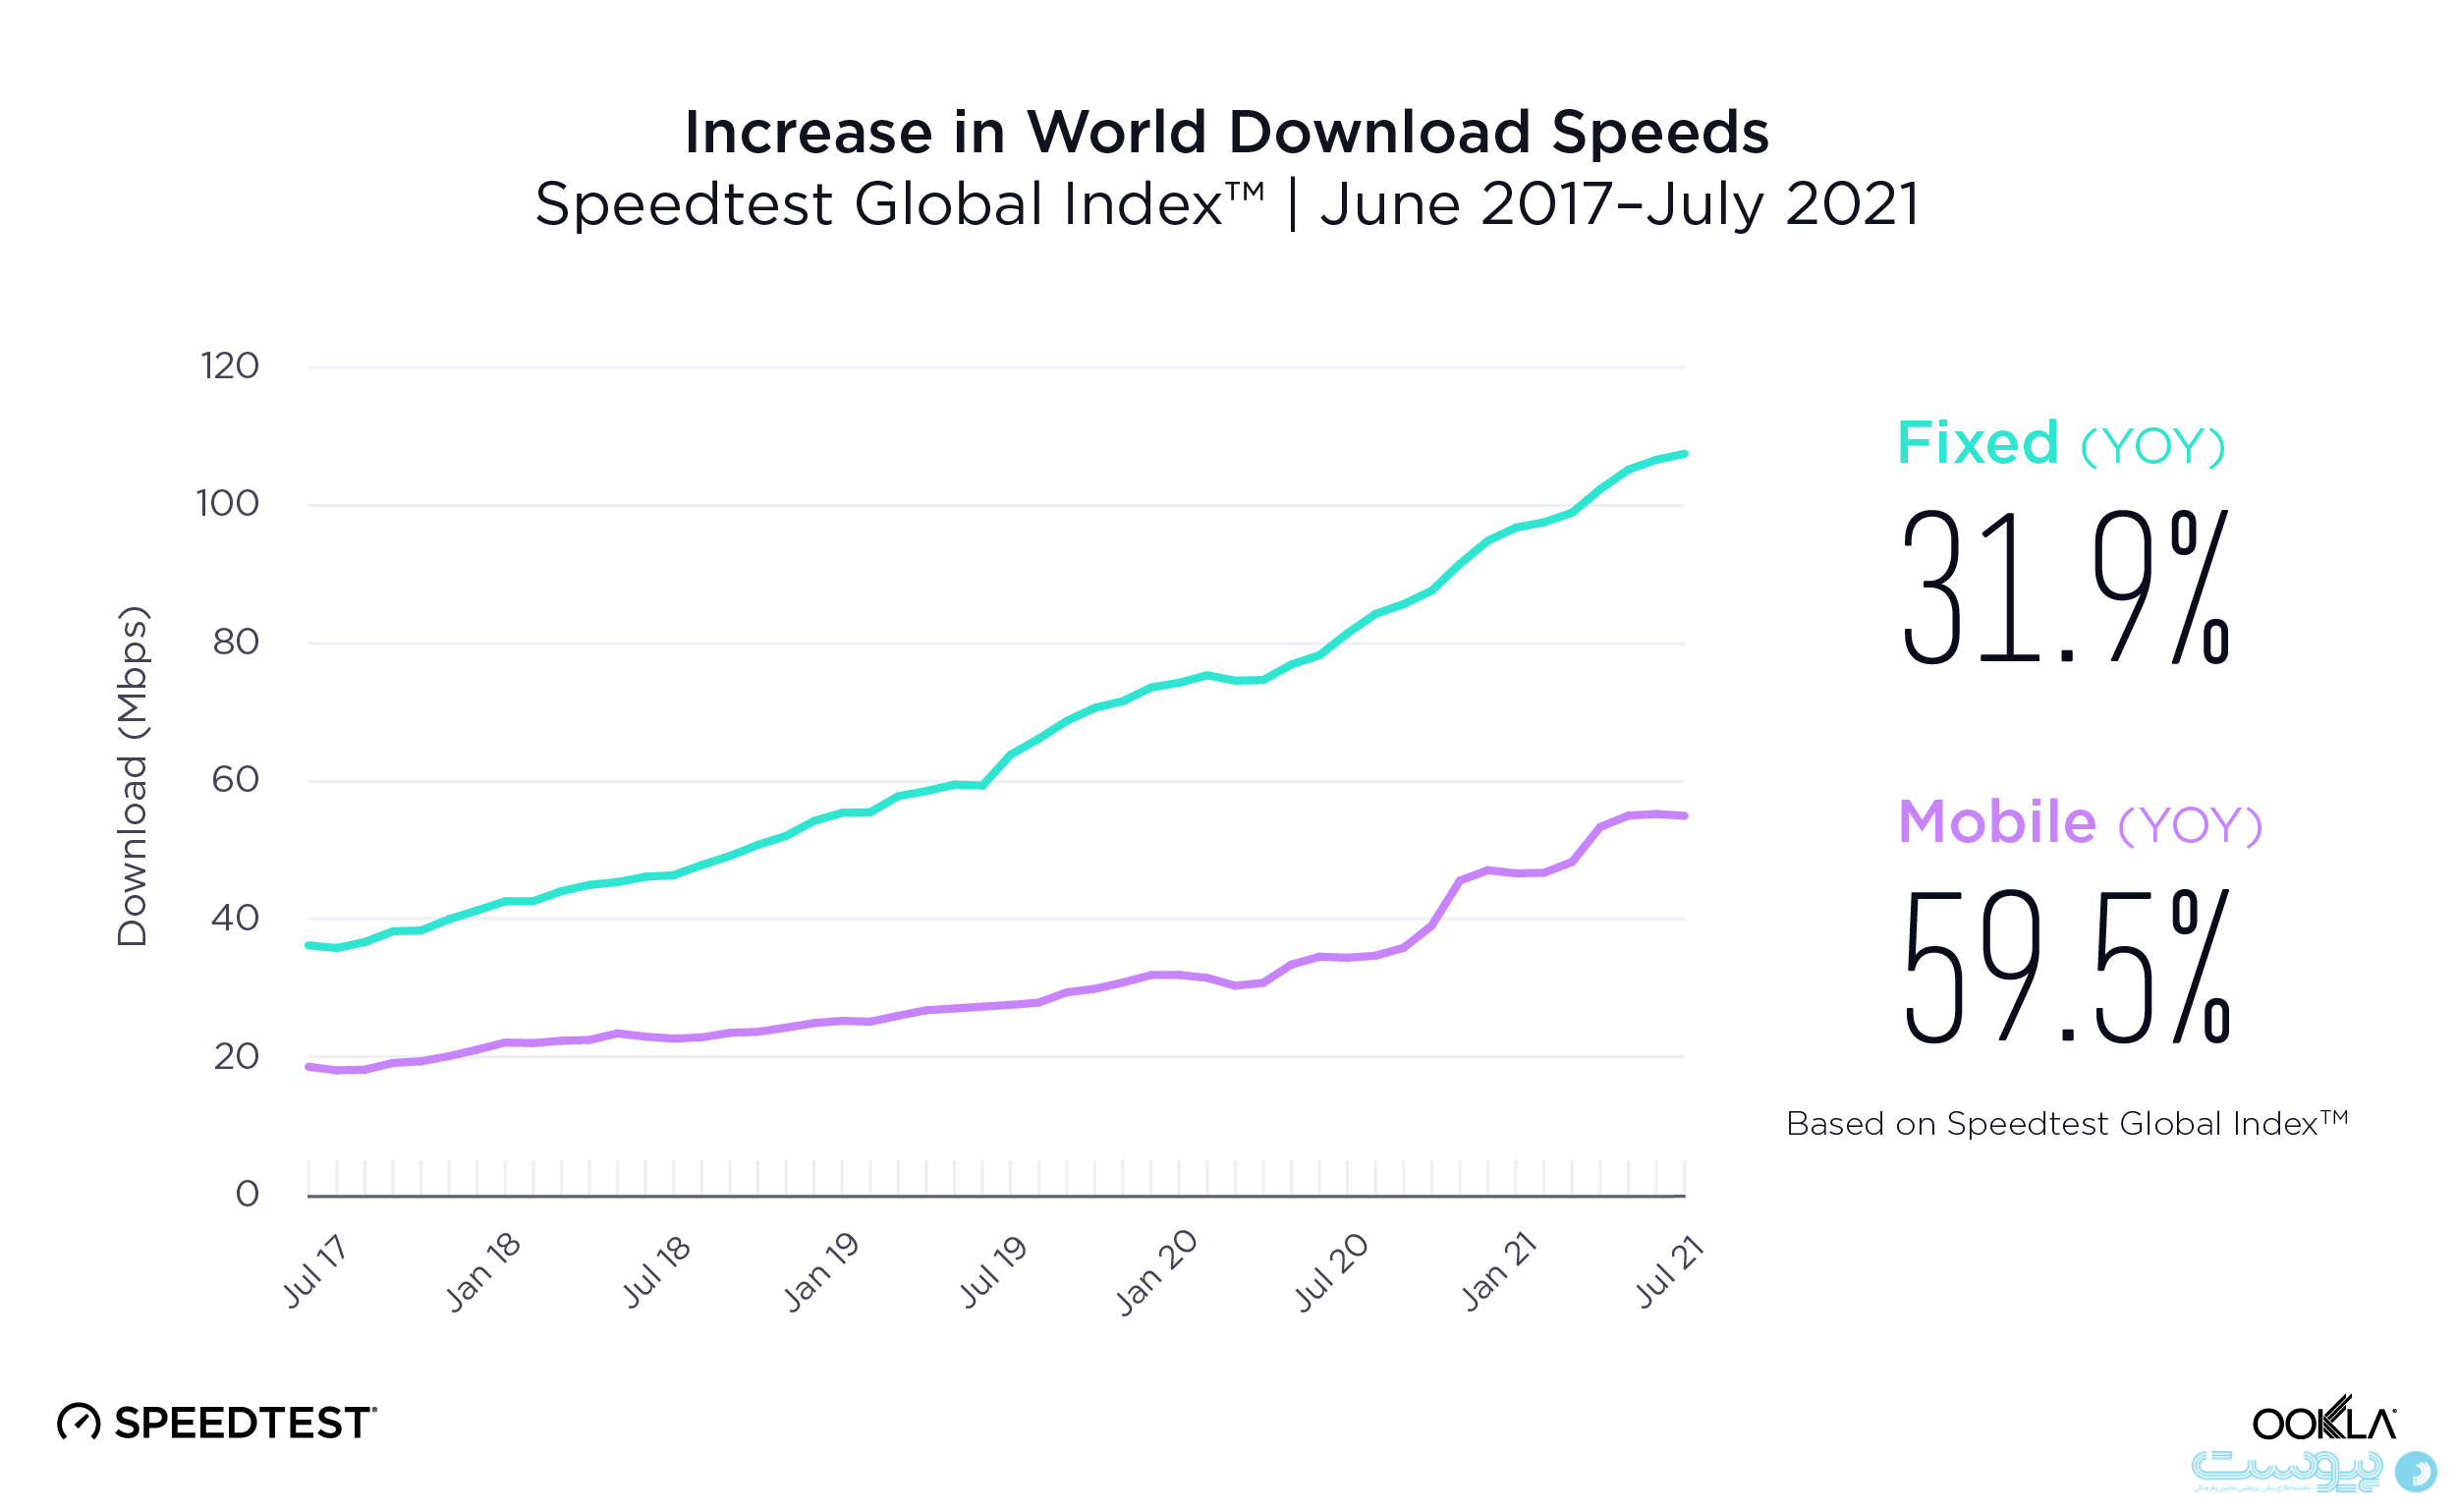 افزایش سرعت اینترنت موبایل و ثابت در یک سال گذشته